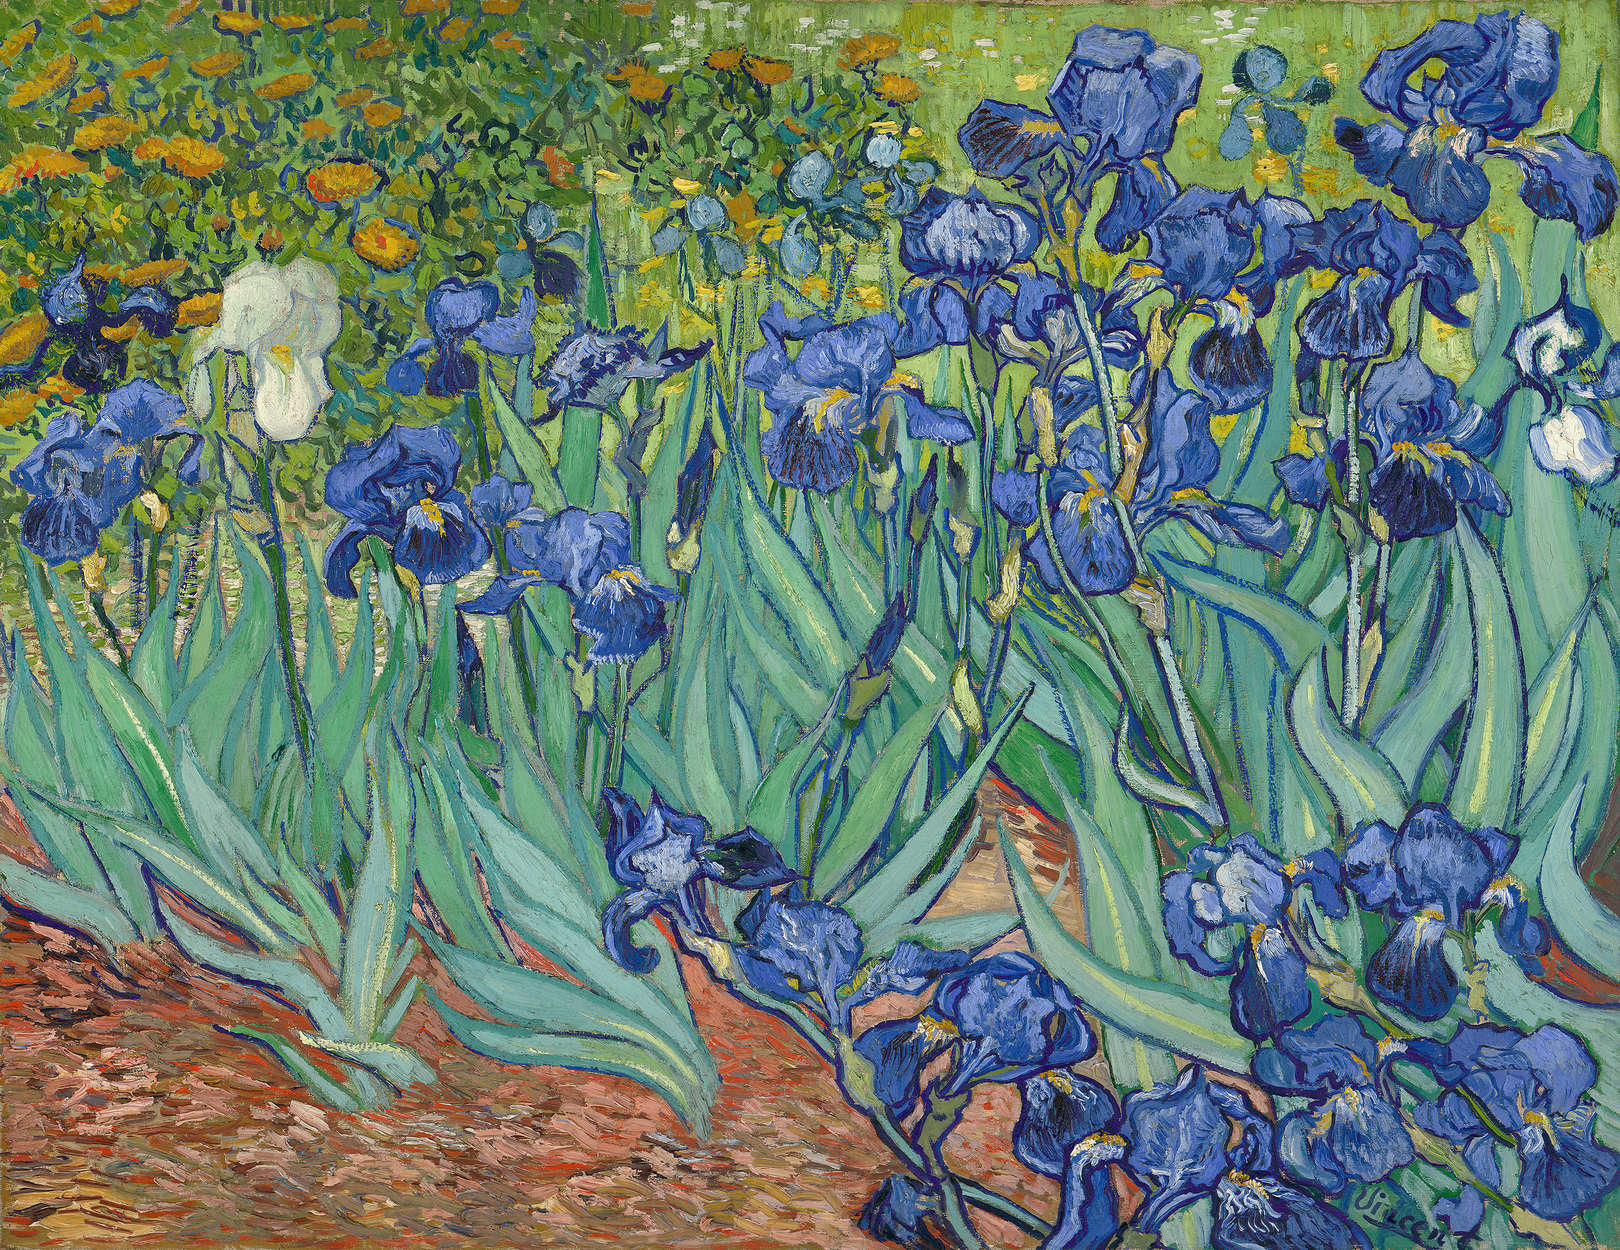             Irissen" muurschildering door Vincent van Gogh
        